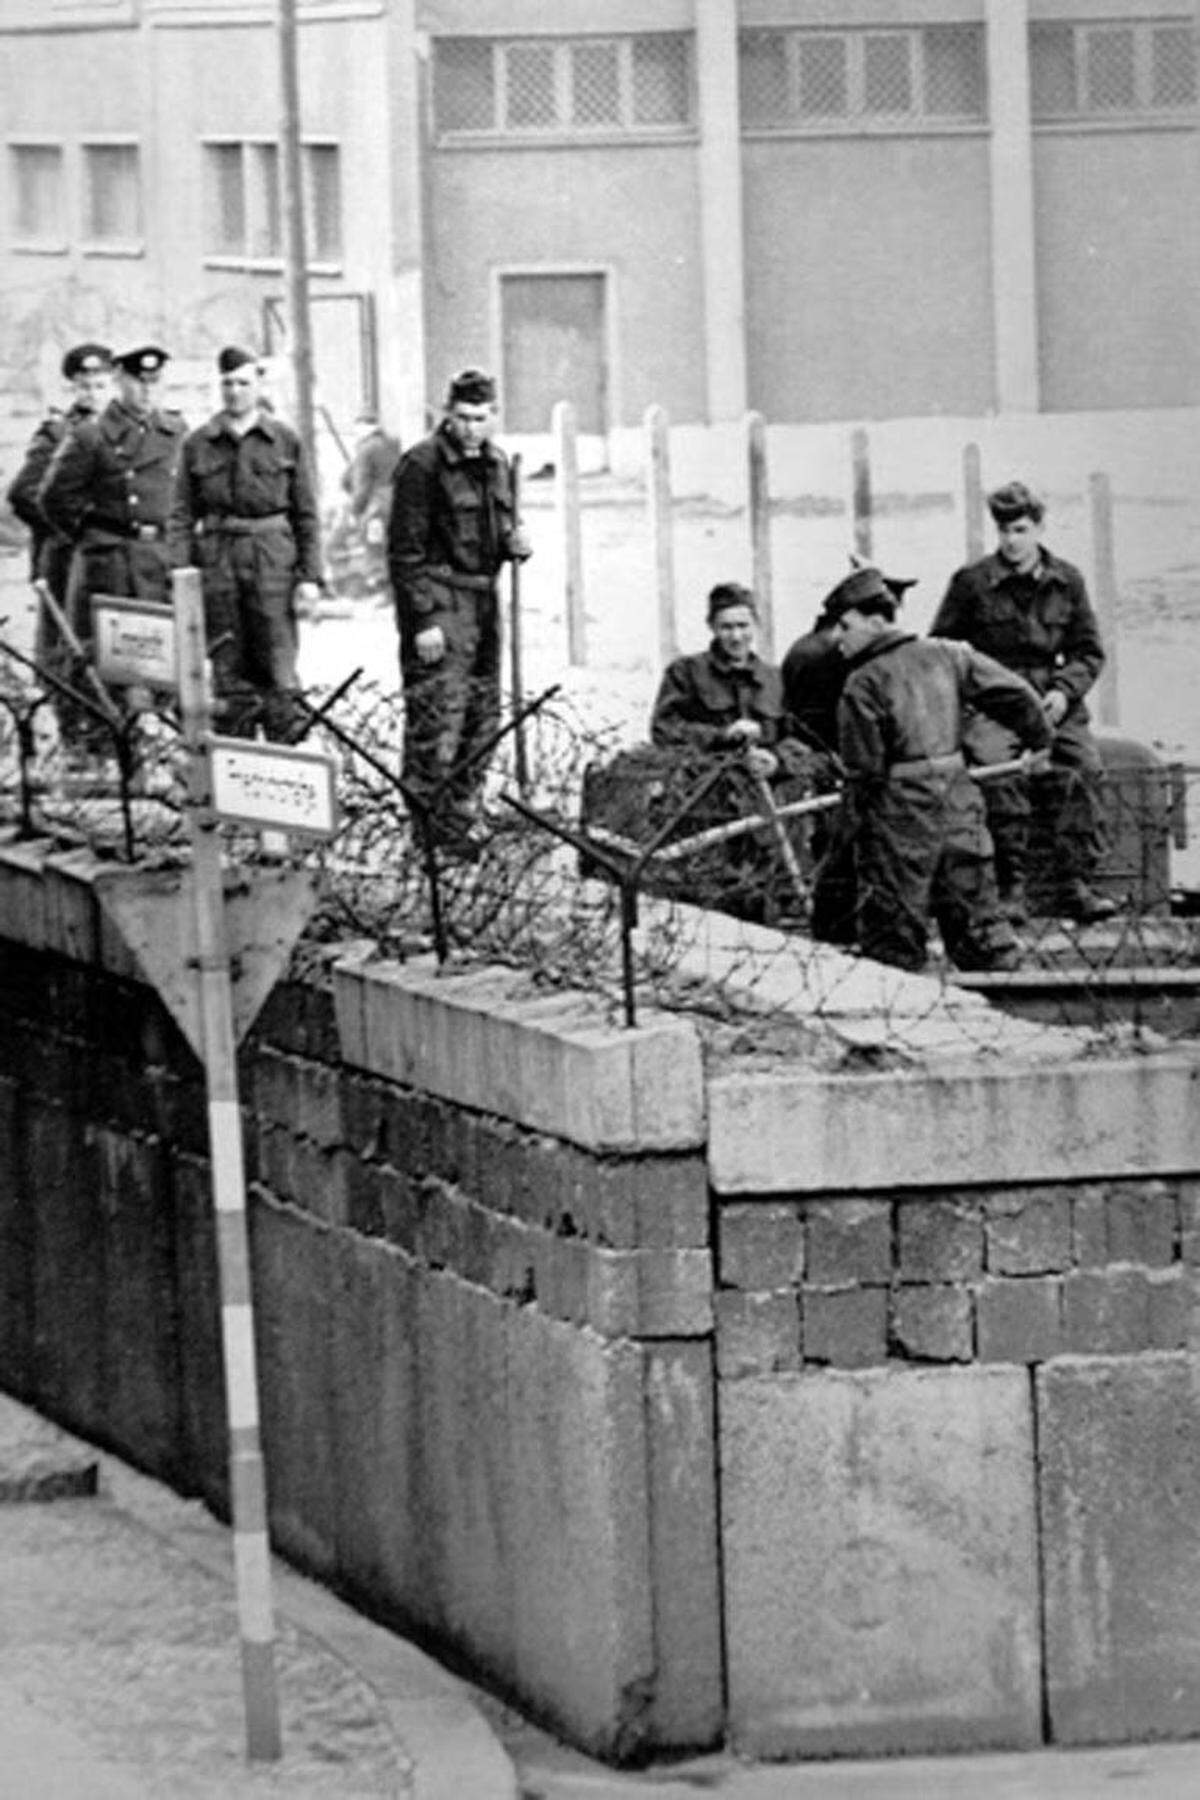 Vor 50 Jahren wurde die Berliner Mauer gebaut. Während Deutschland die historische Teilung längst überwunden hat, werden an mehreren Schauplätzen der Welt neue Mauern gebaut oder erhalten. Ein Überblick.